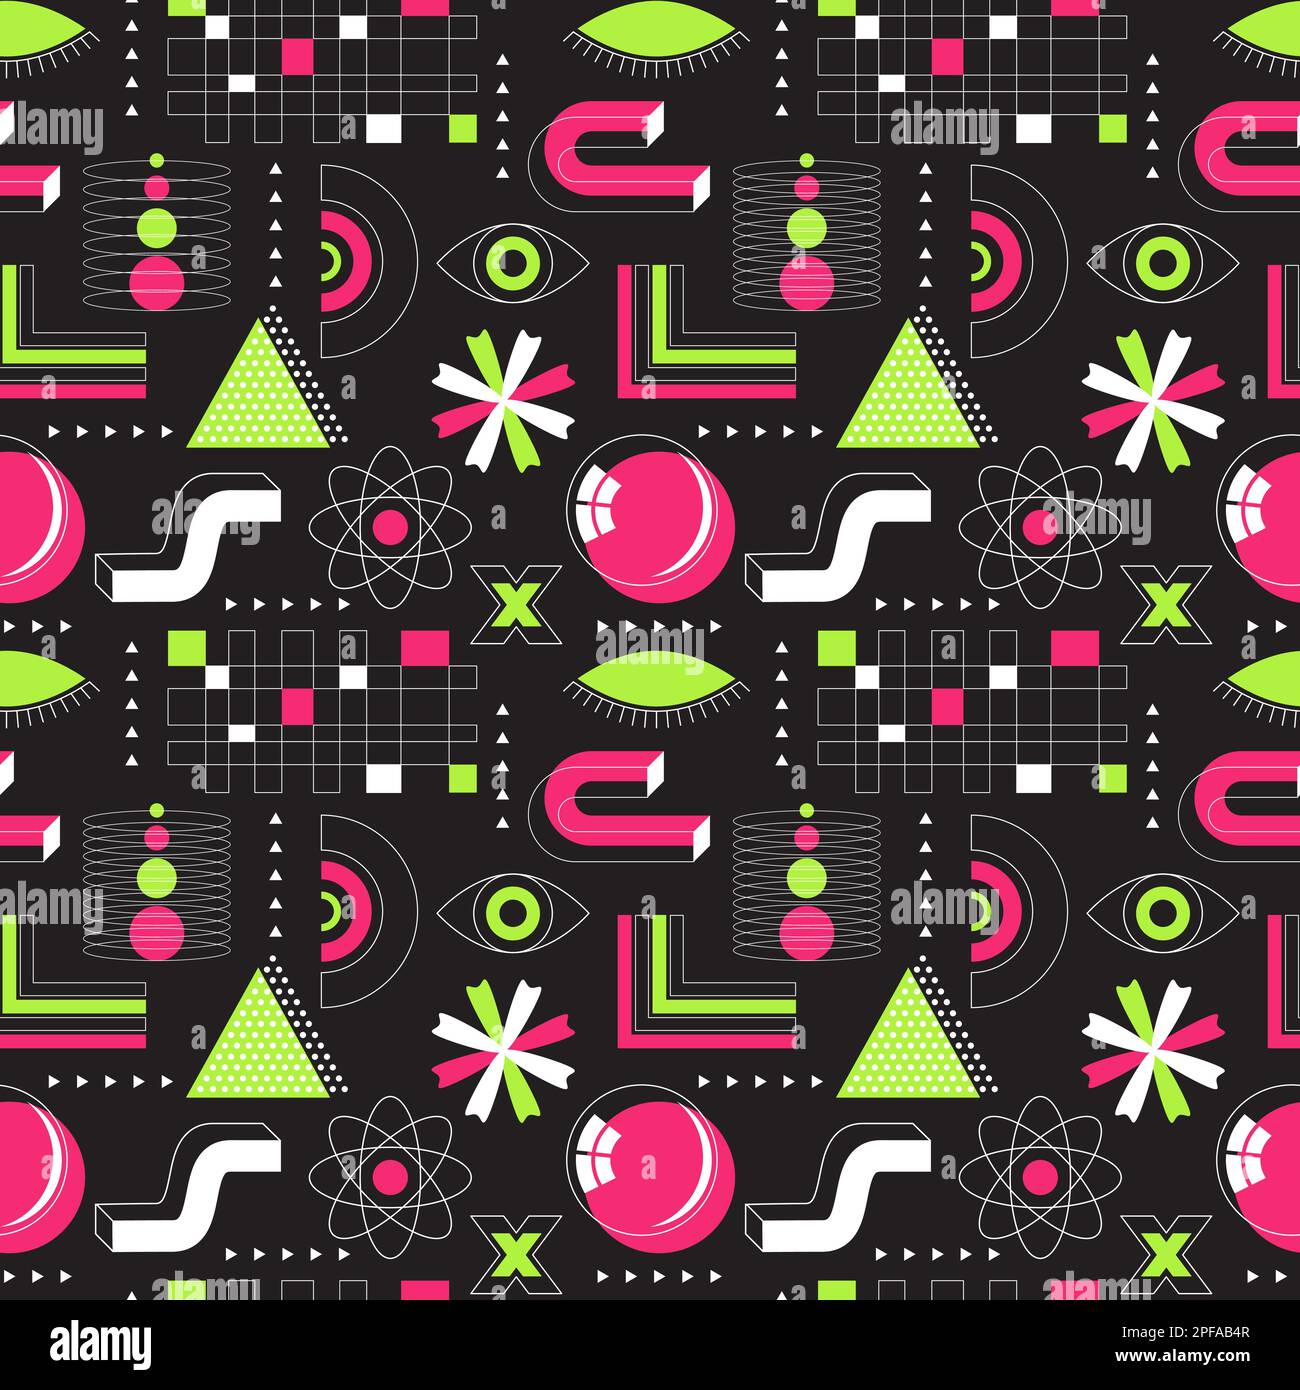 Leuchtendes pinkfarbenes und grünes Neon, saures, nahtloses Muster. Abstrakte geometrische Formen, fette, lineare Objekte. Brutalismus, Retro-Futurismus-Stil. Punkte, Dreiecke, Stock Vektor